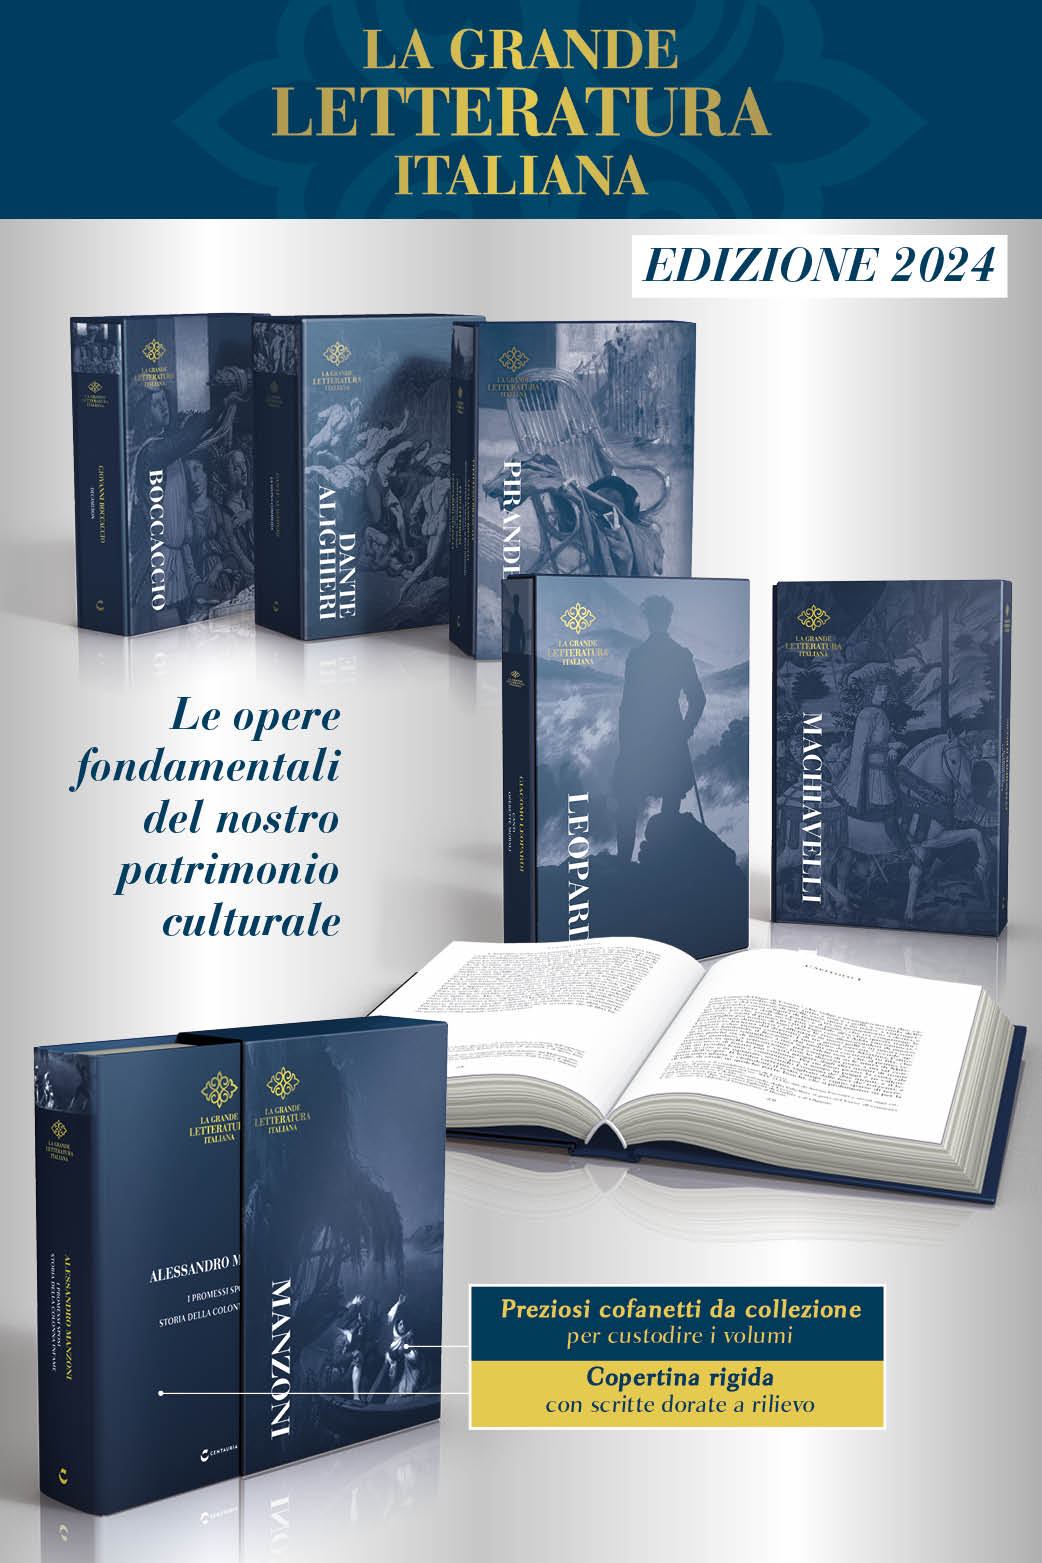 https://www.centauria.it/storage/app/uploads/public/opera/0000964/preview/la-grande-letteratura-italiana-edizione-2024-65778f5e.jpg